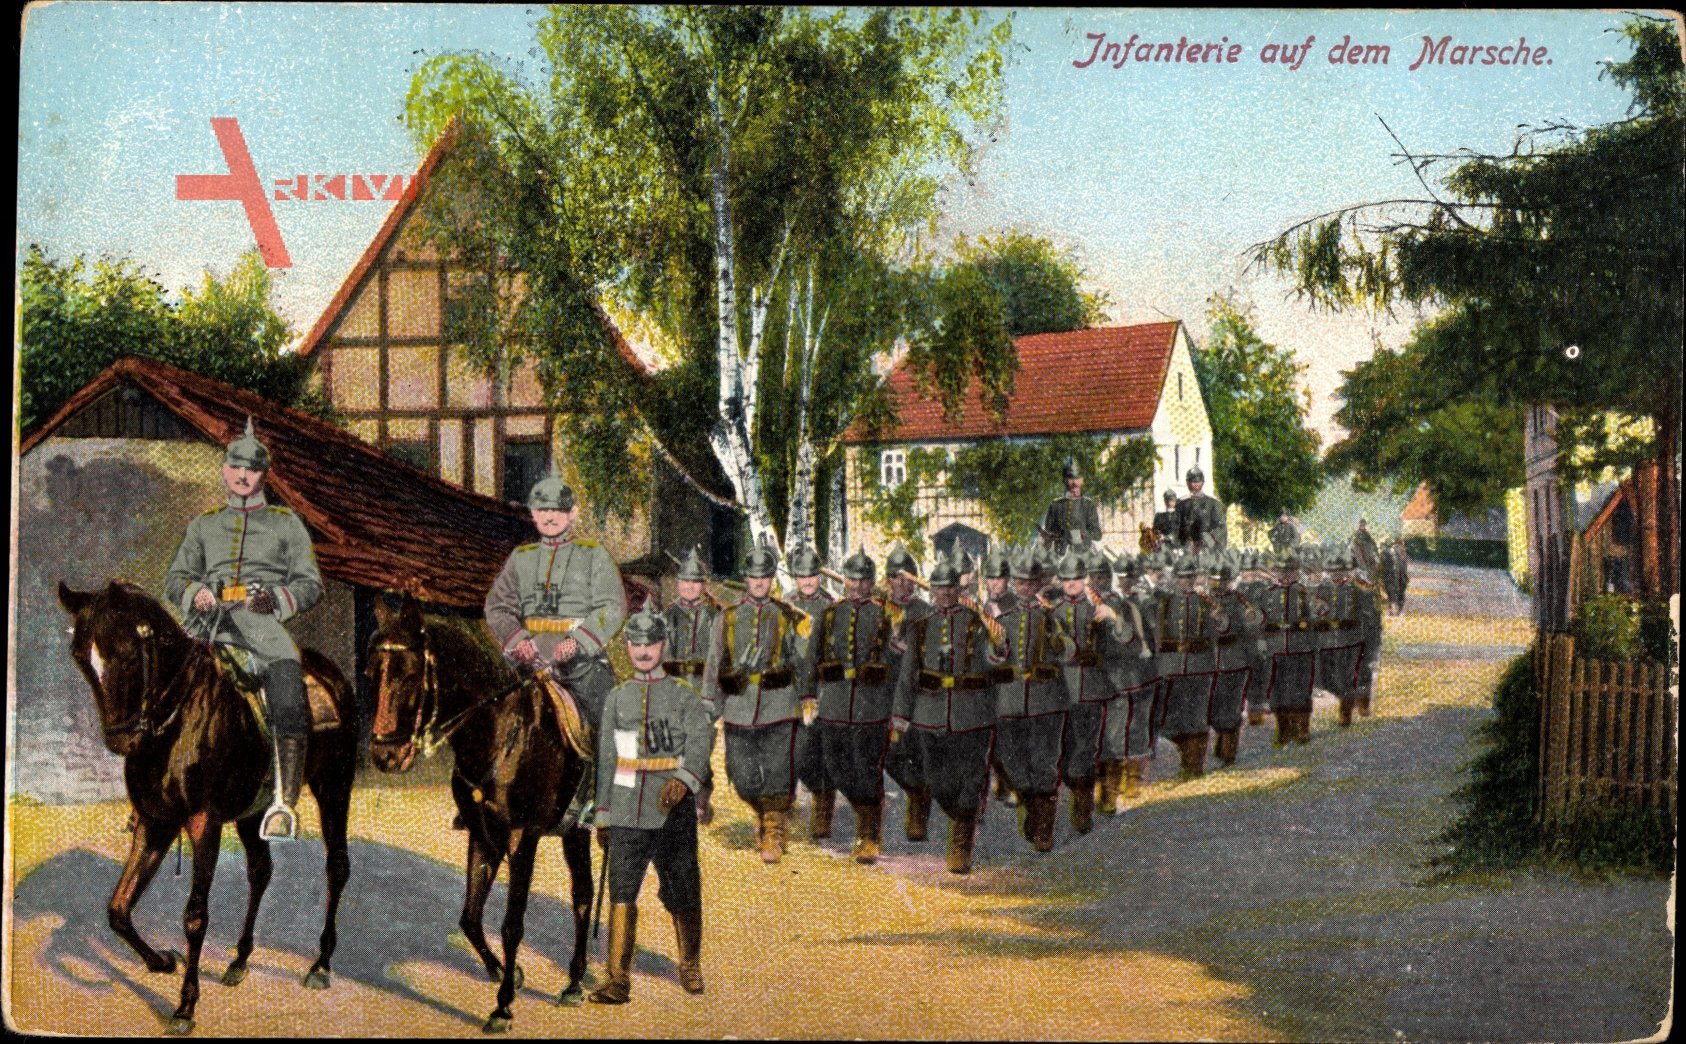 Deutsche Infanterie auf dem Marsche, Soldatenkolonne marschiert durch Ort